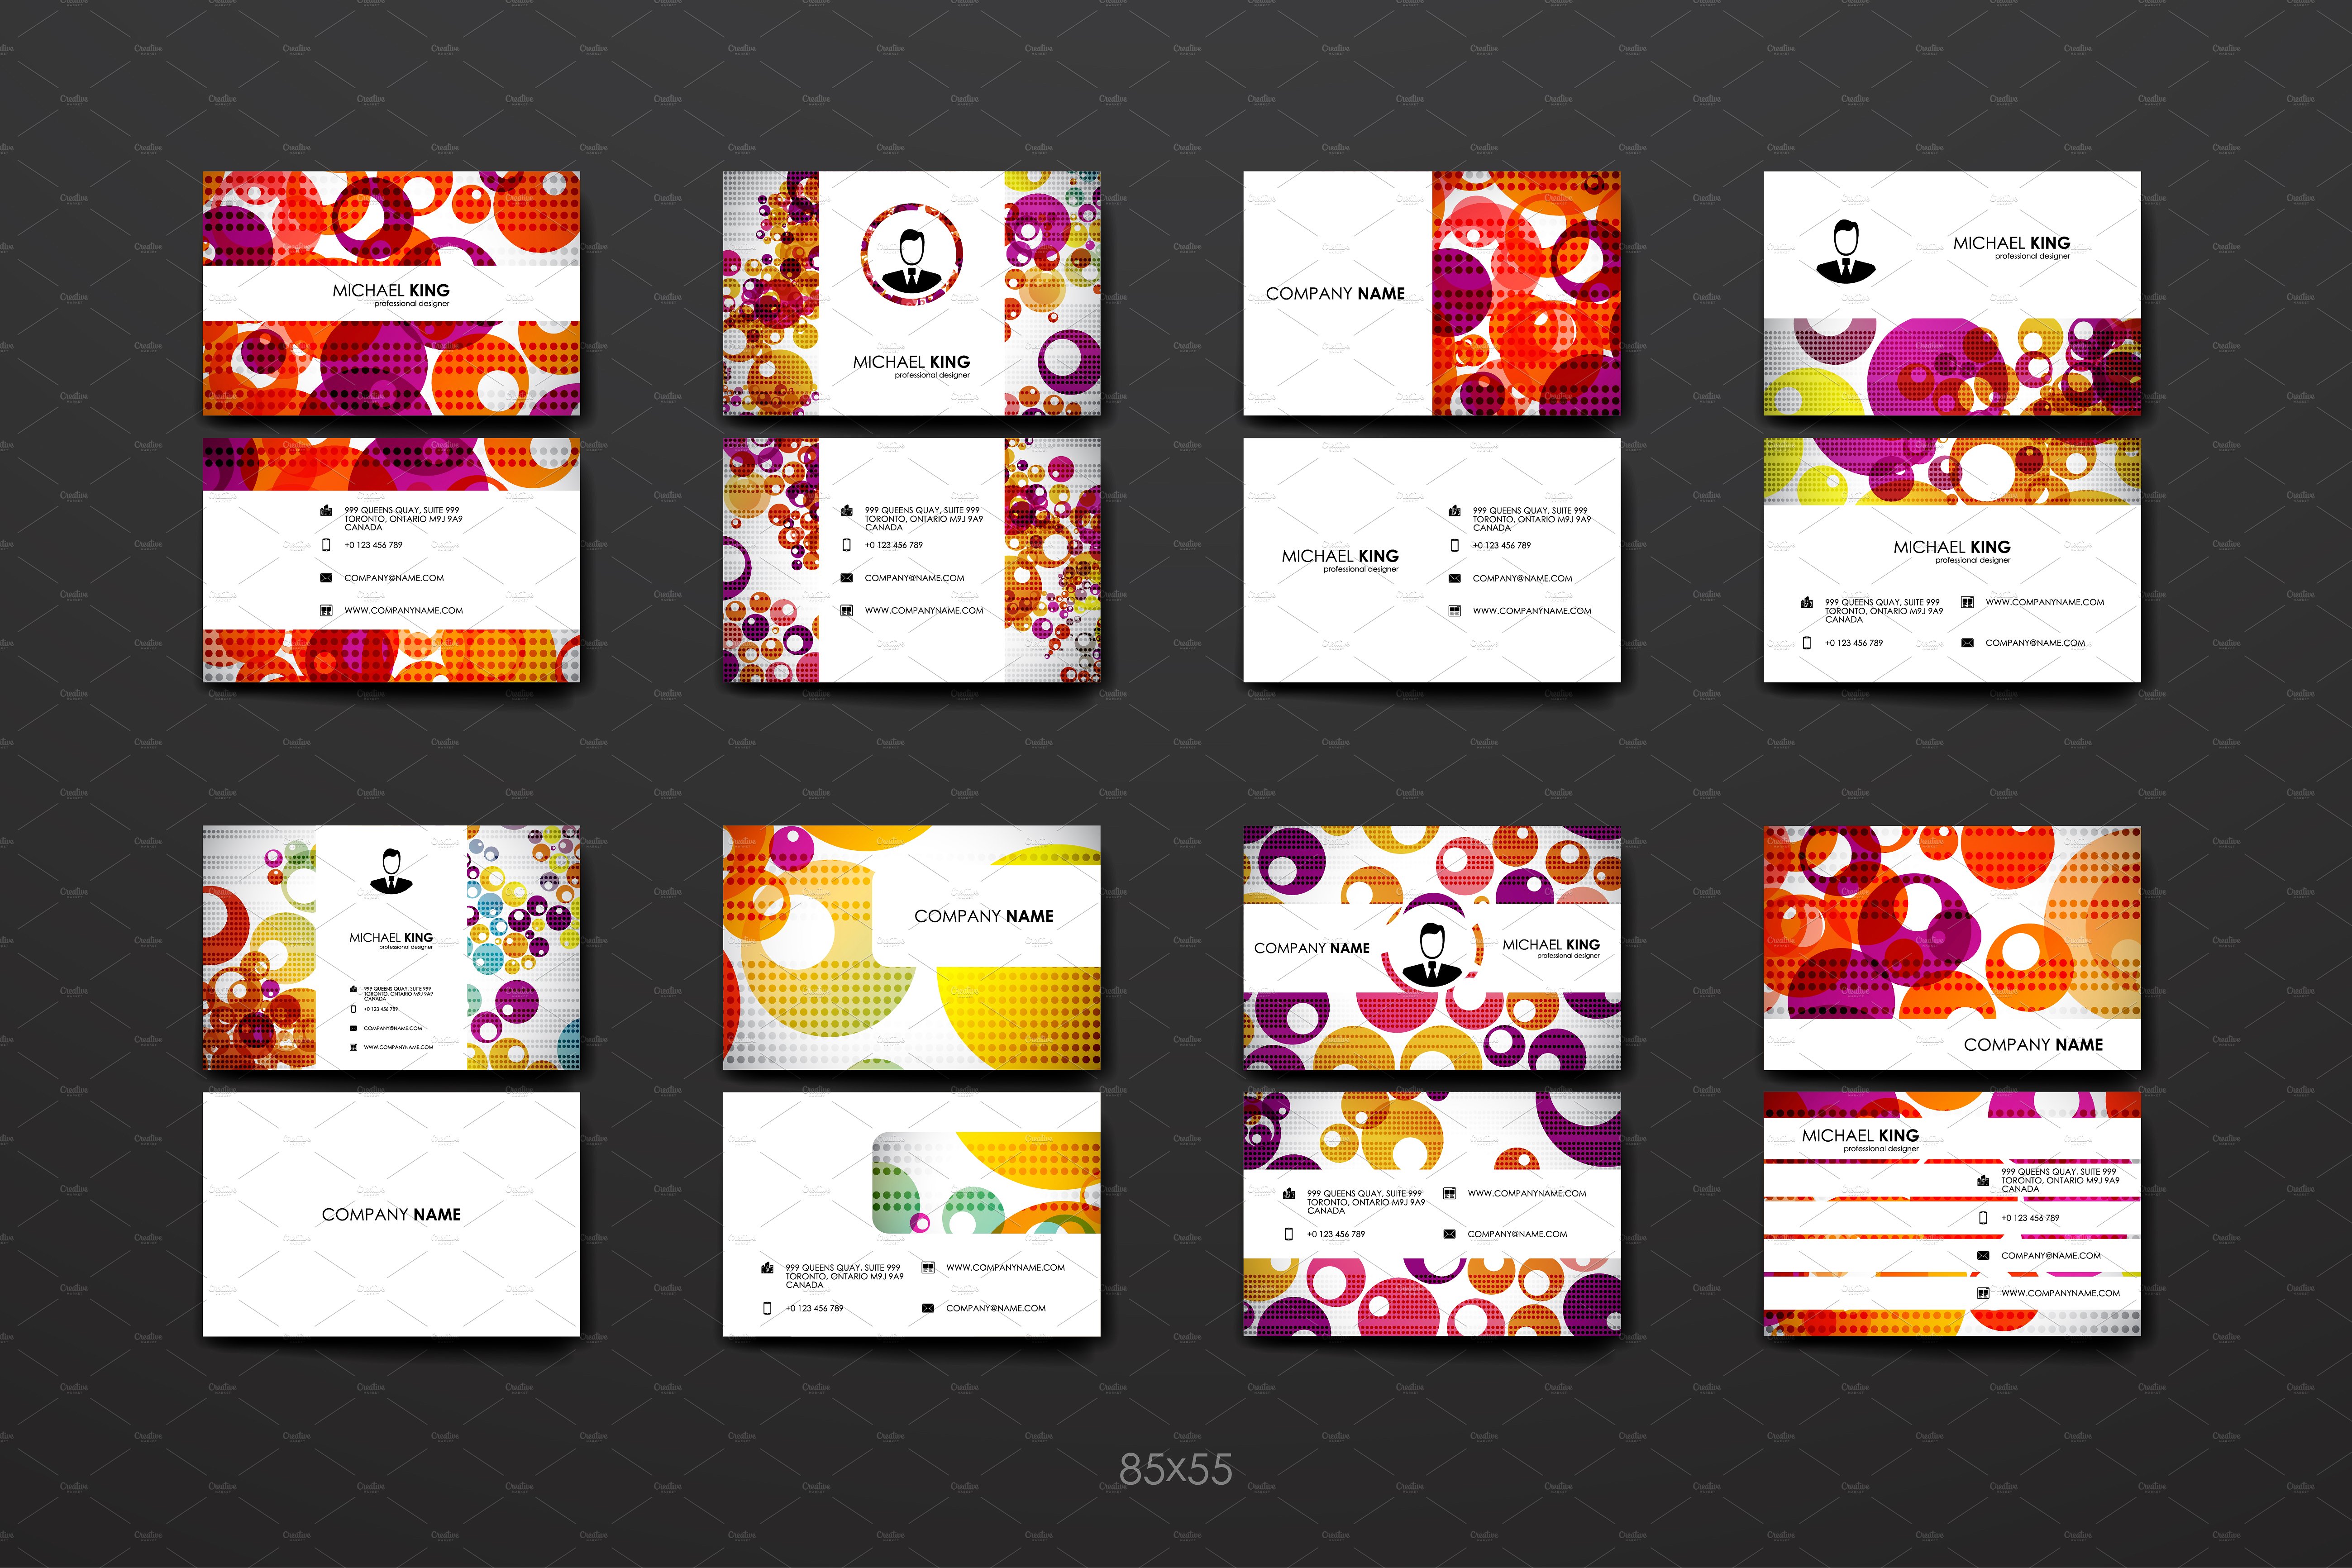 多彩抽象图形背景企业名片模板 Colourful Business Card Templates插图